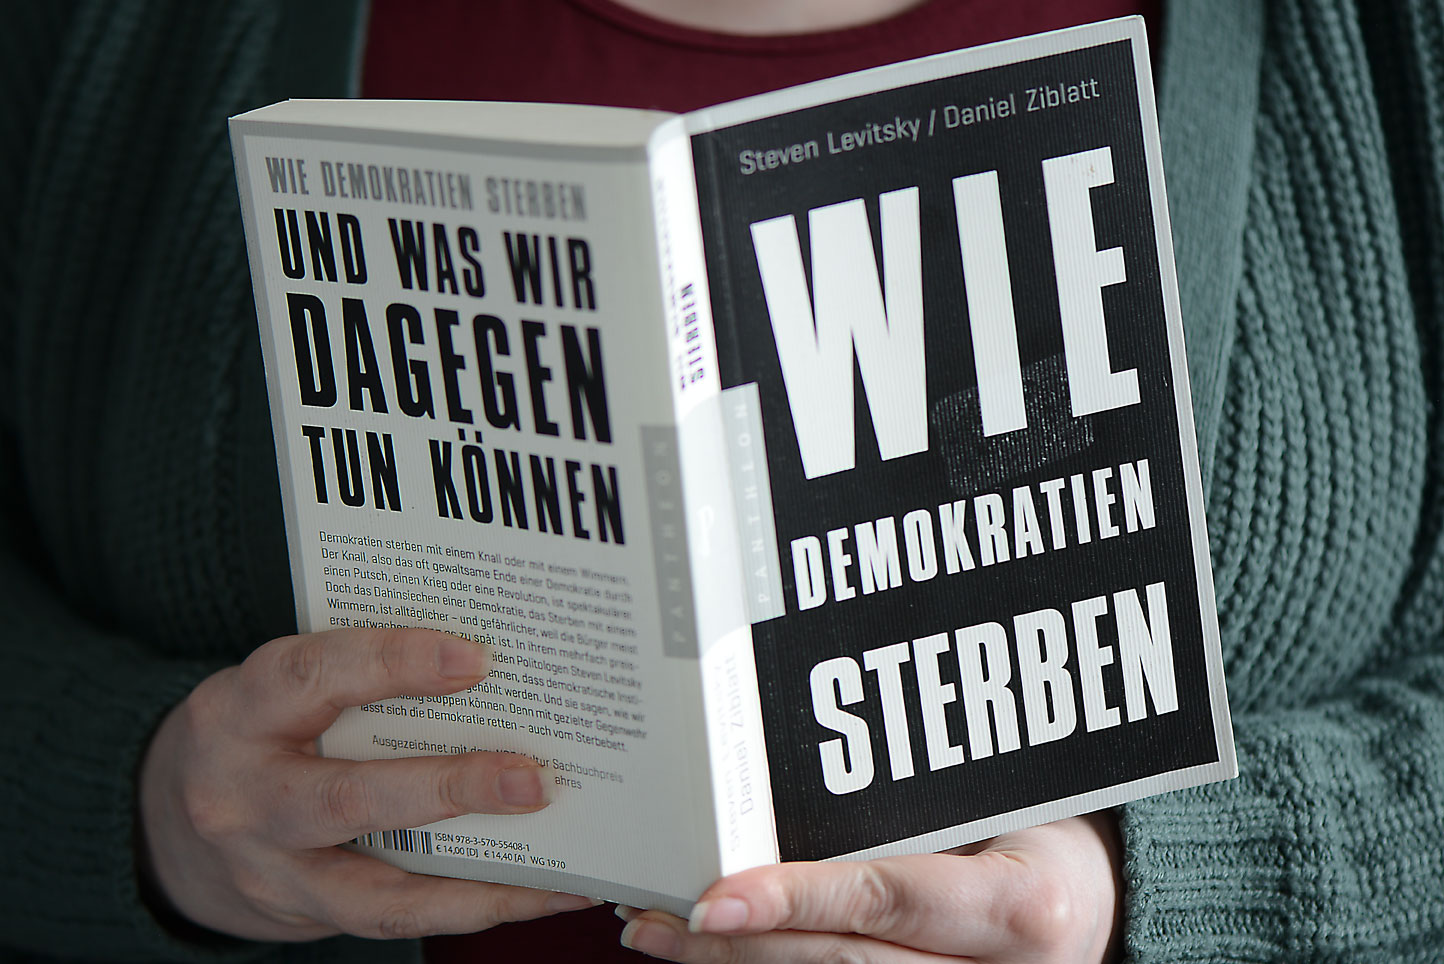 Auf dem Foto zu sehen: Buchcover "wie Demokratien sterben" von Steven Levitsky und Daniel Ziblatt